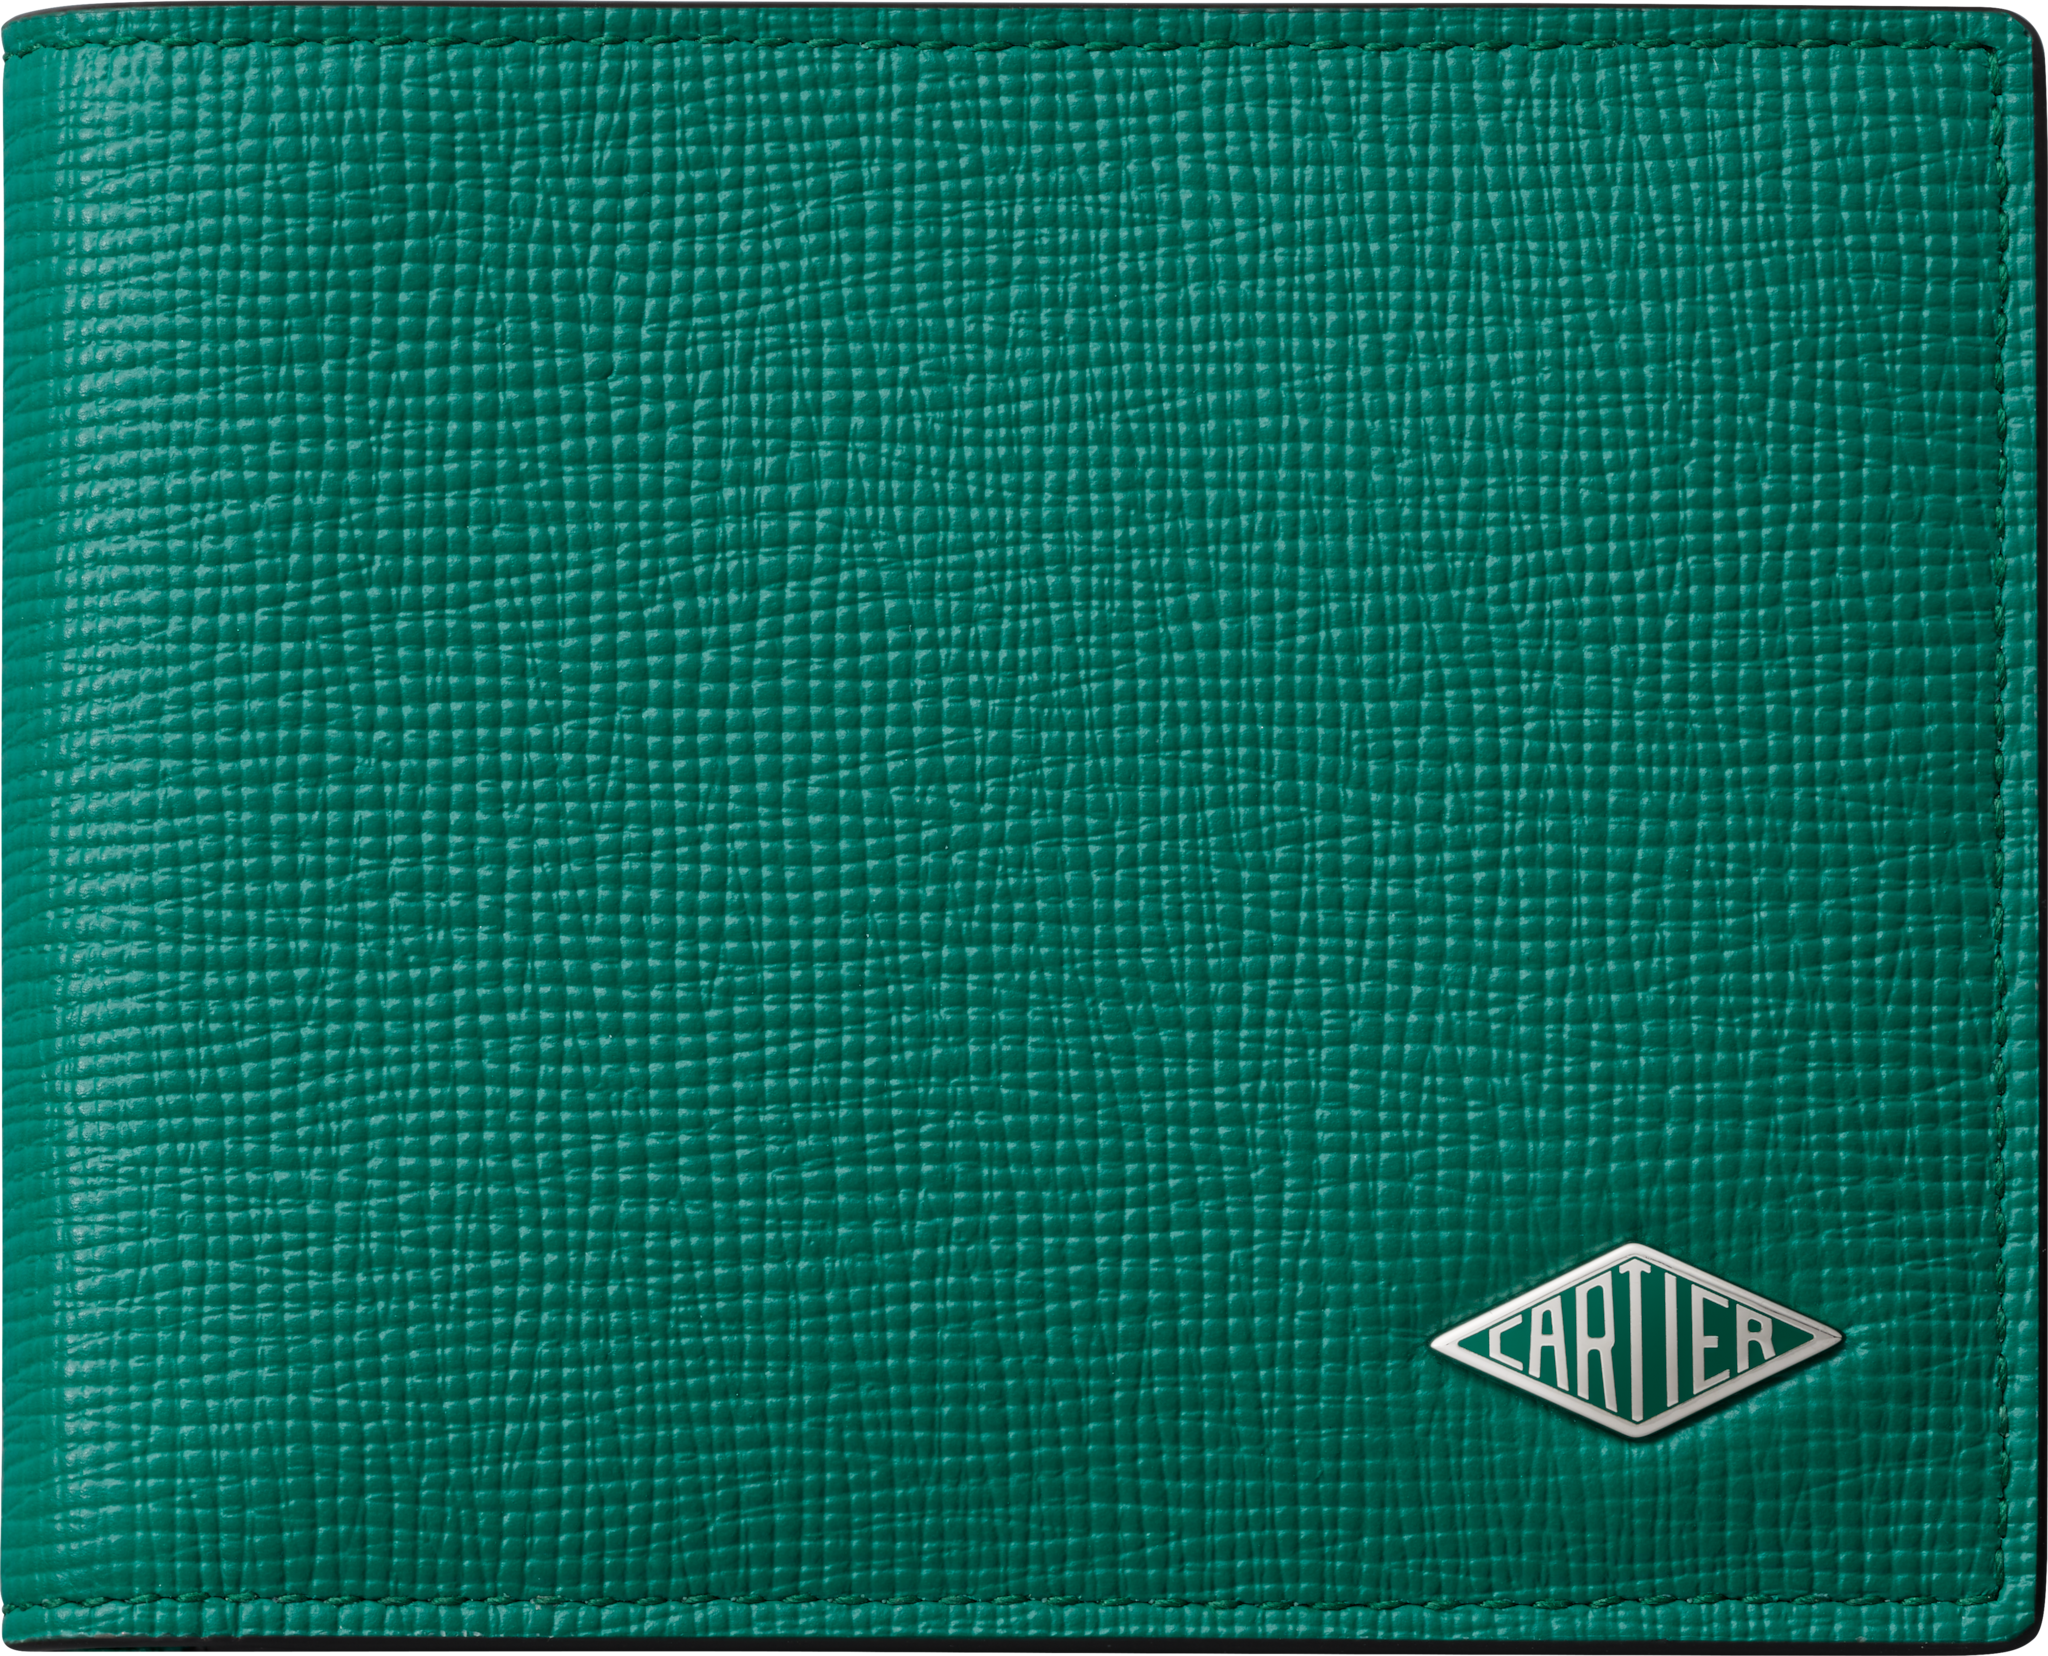 カルティエ ロザンジュ 二つ折りウォレットグラスグリーン グレインドカーフスキン、パラジウムフィニッシュ、グラスグリーンエナメル